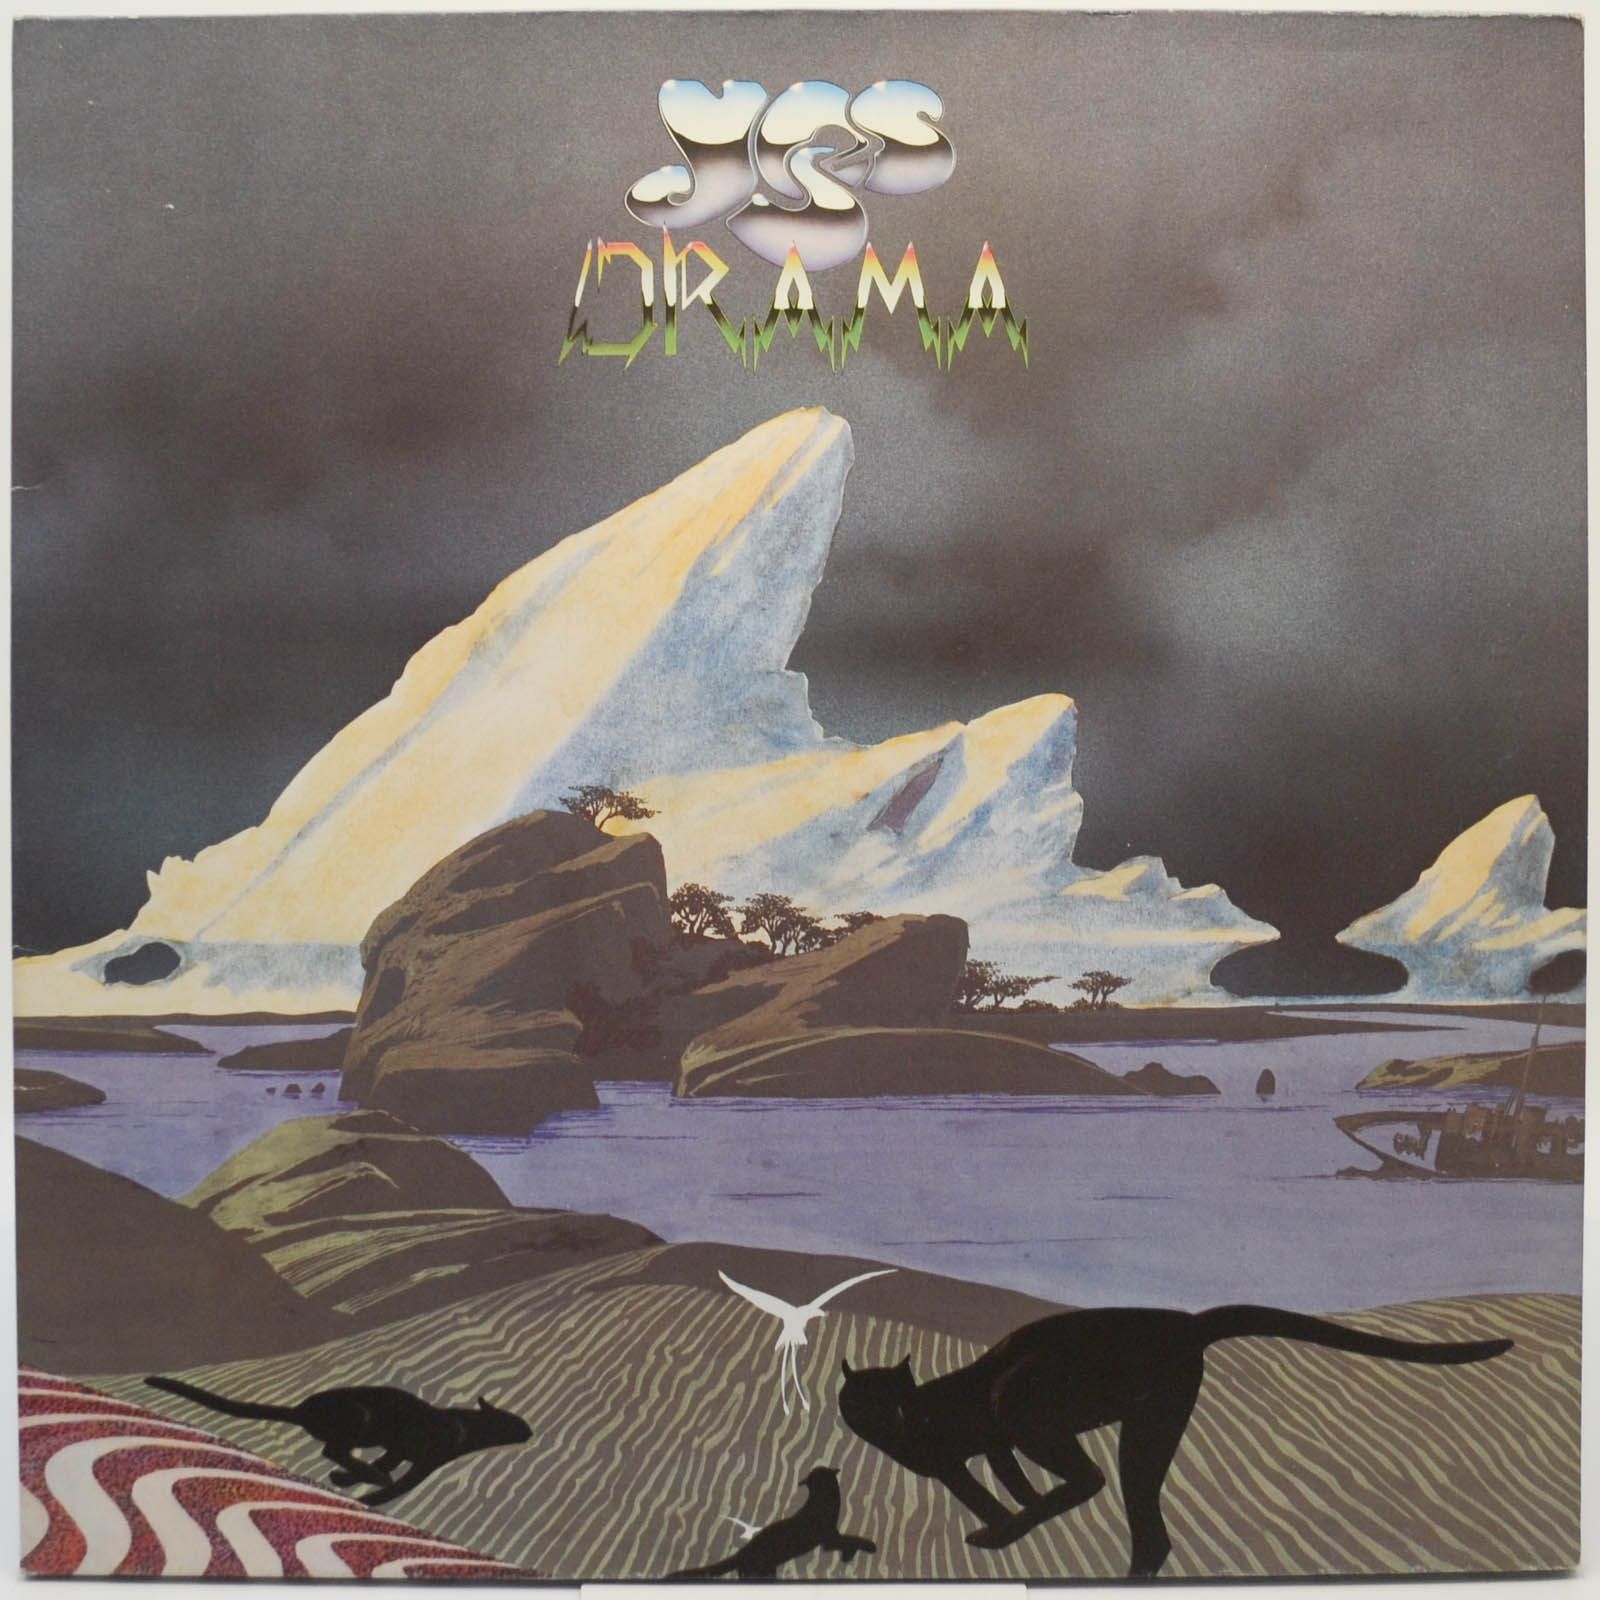 Yes — Drama, 1980